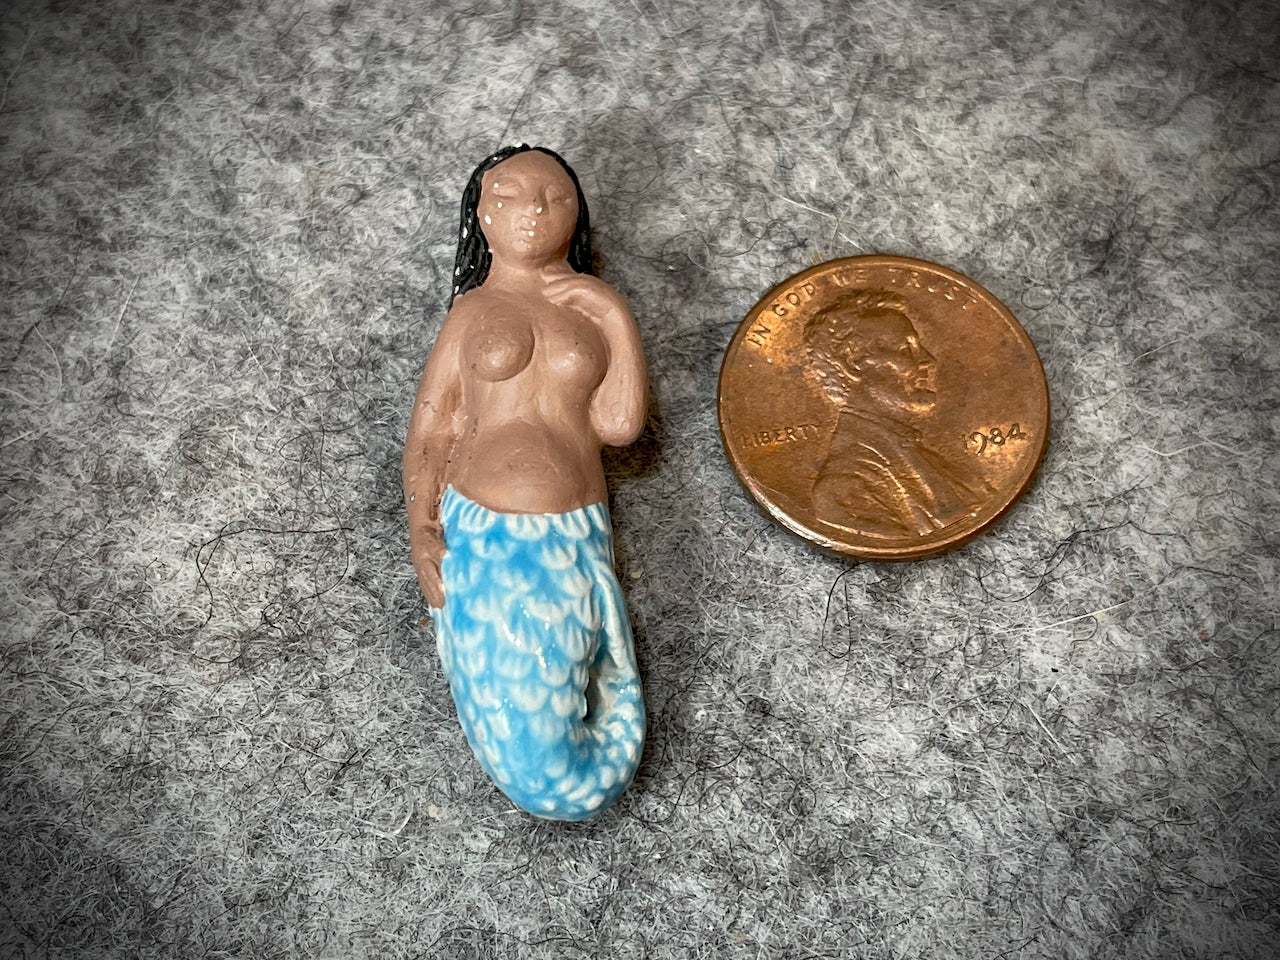 Peruvian Ceramic Bead—Mermaid